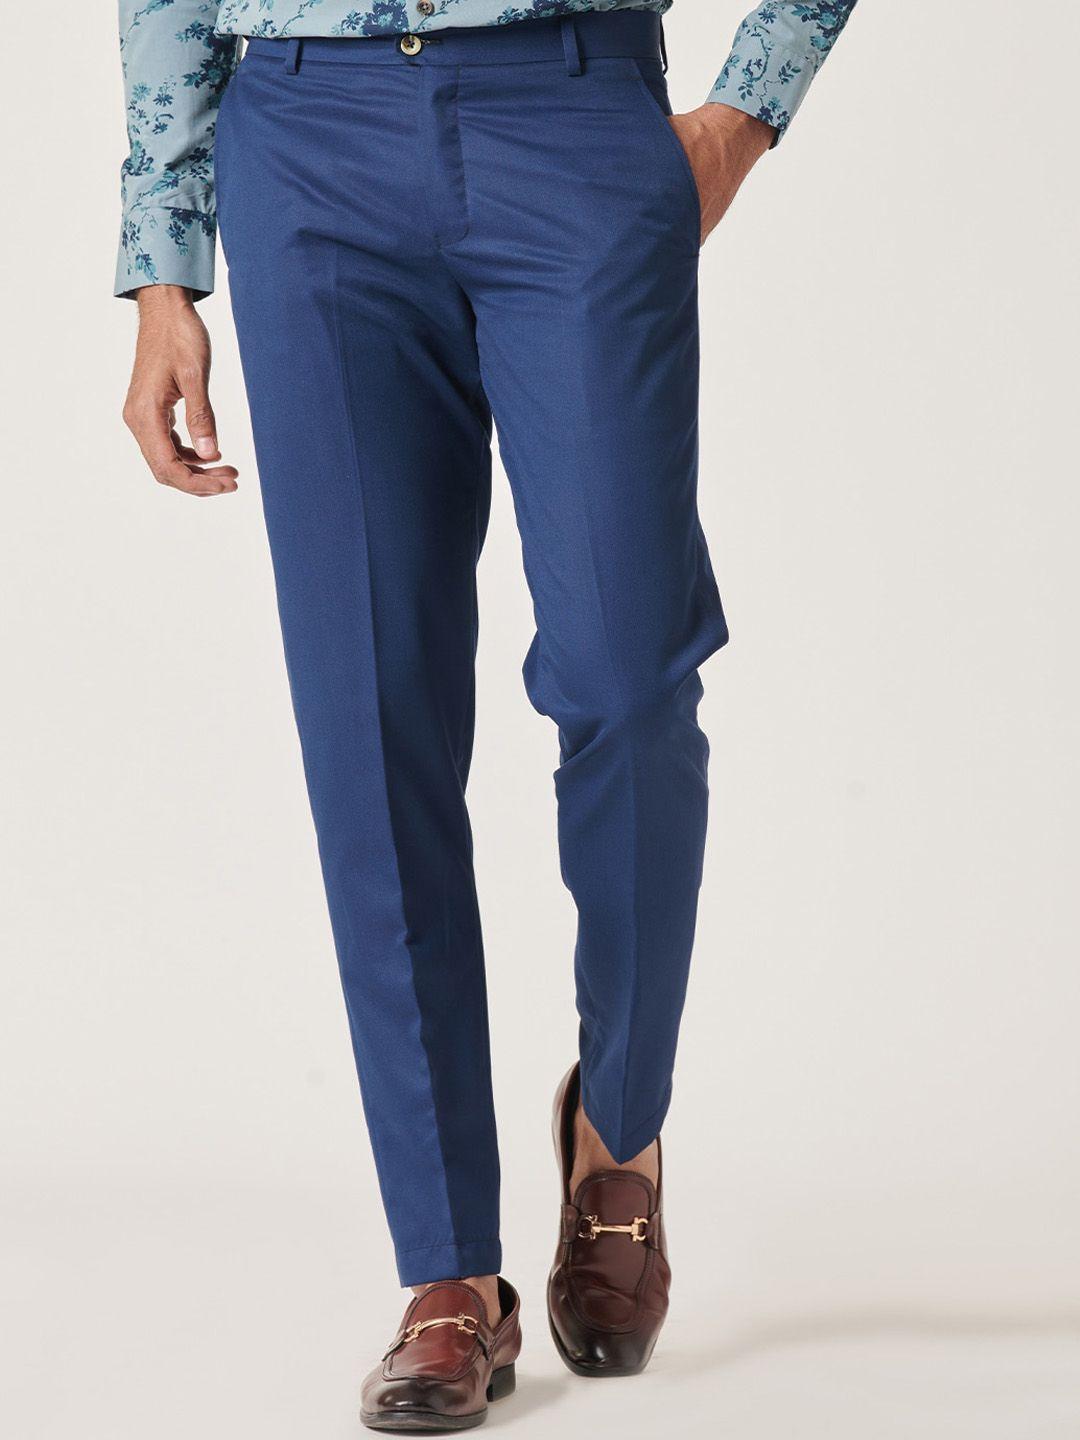 mr-button-men-mid-rise-slim-fit-trousers